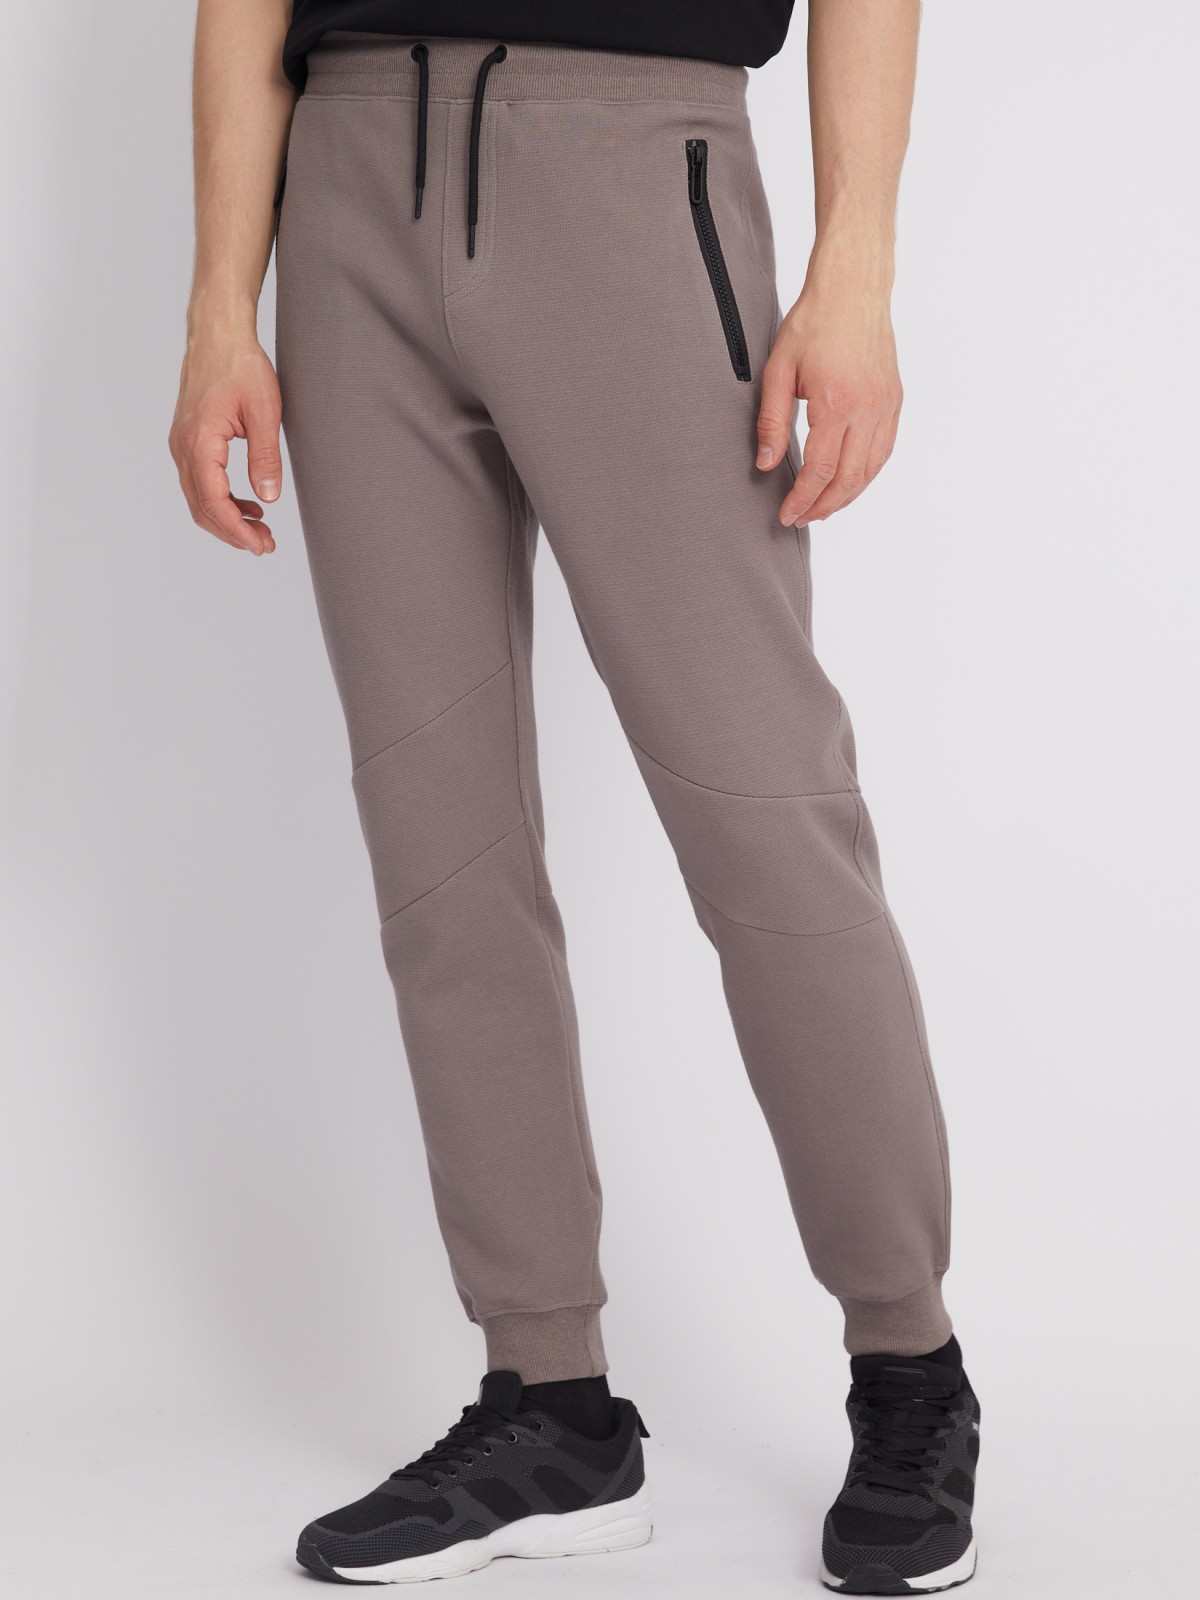 Трикотажные брюки-джоггеры в спортивном стиле zolla 213317679023, цвет коричневый, размер S - фото 4